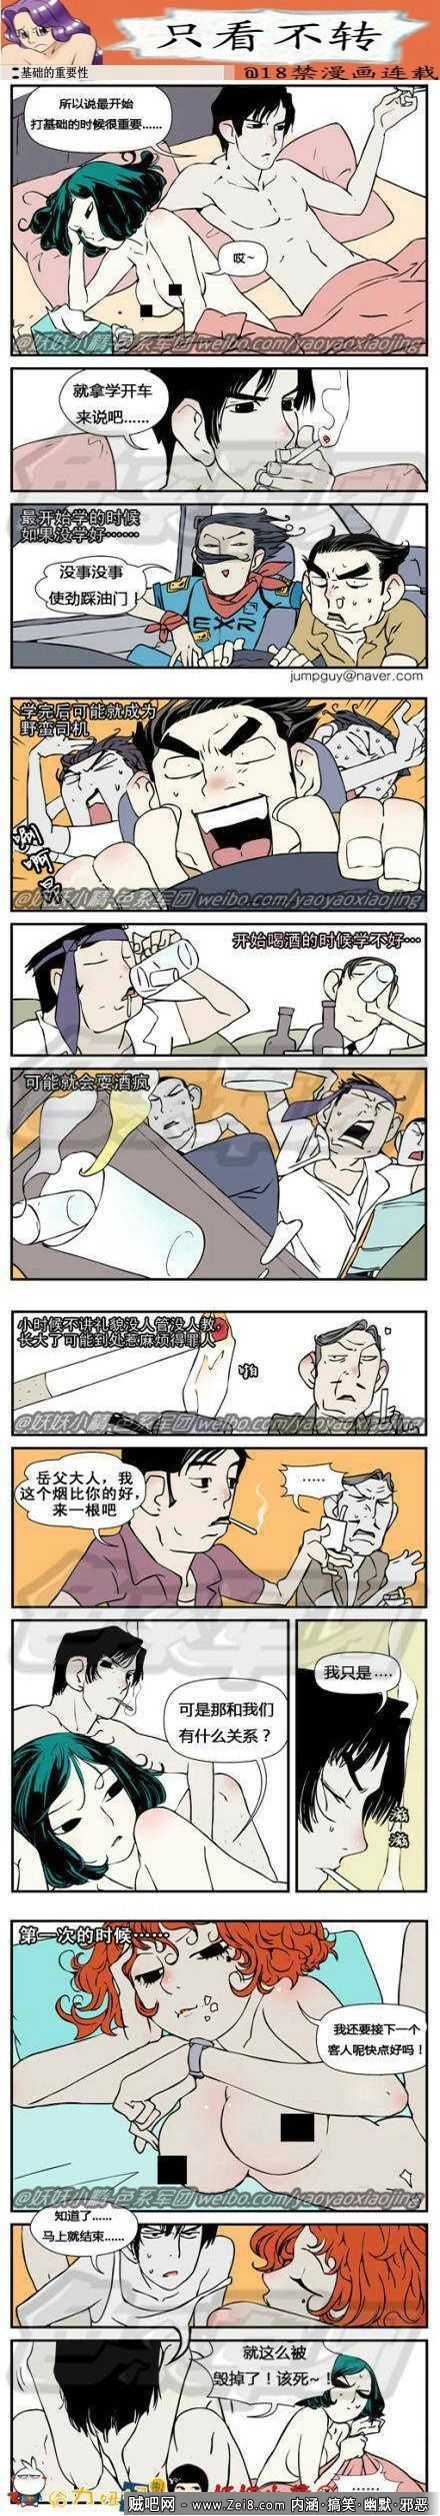 [啪啪啪邪恶韩国漫画]：曾经的记忆